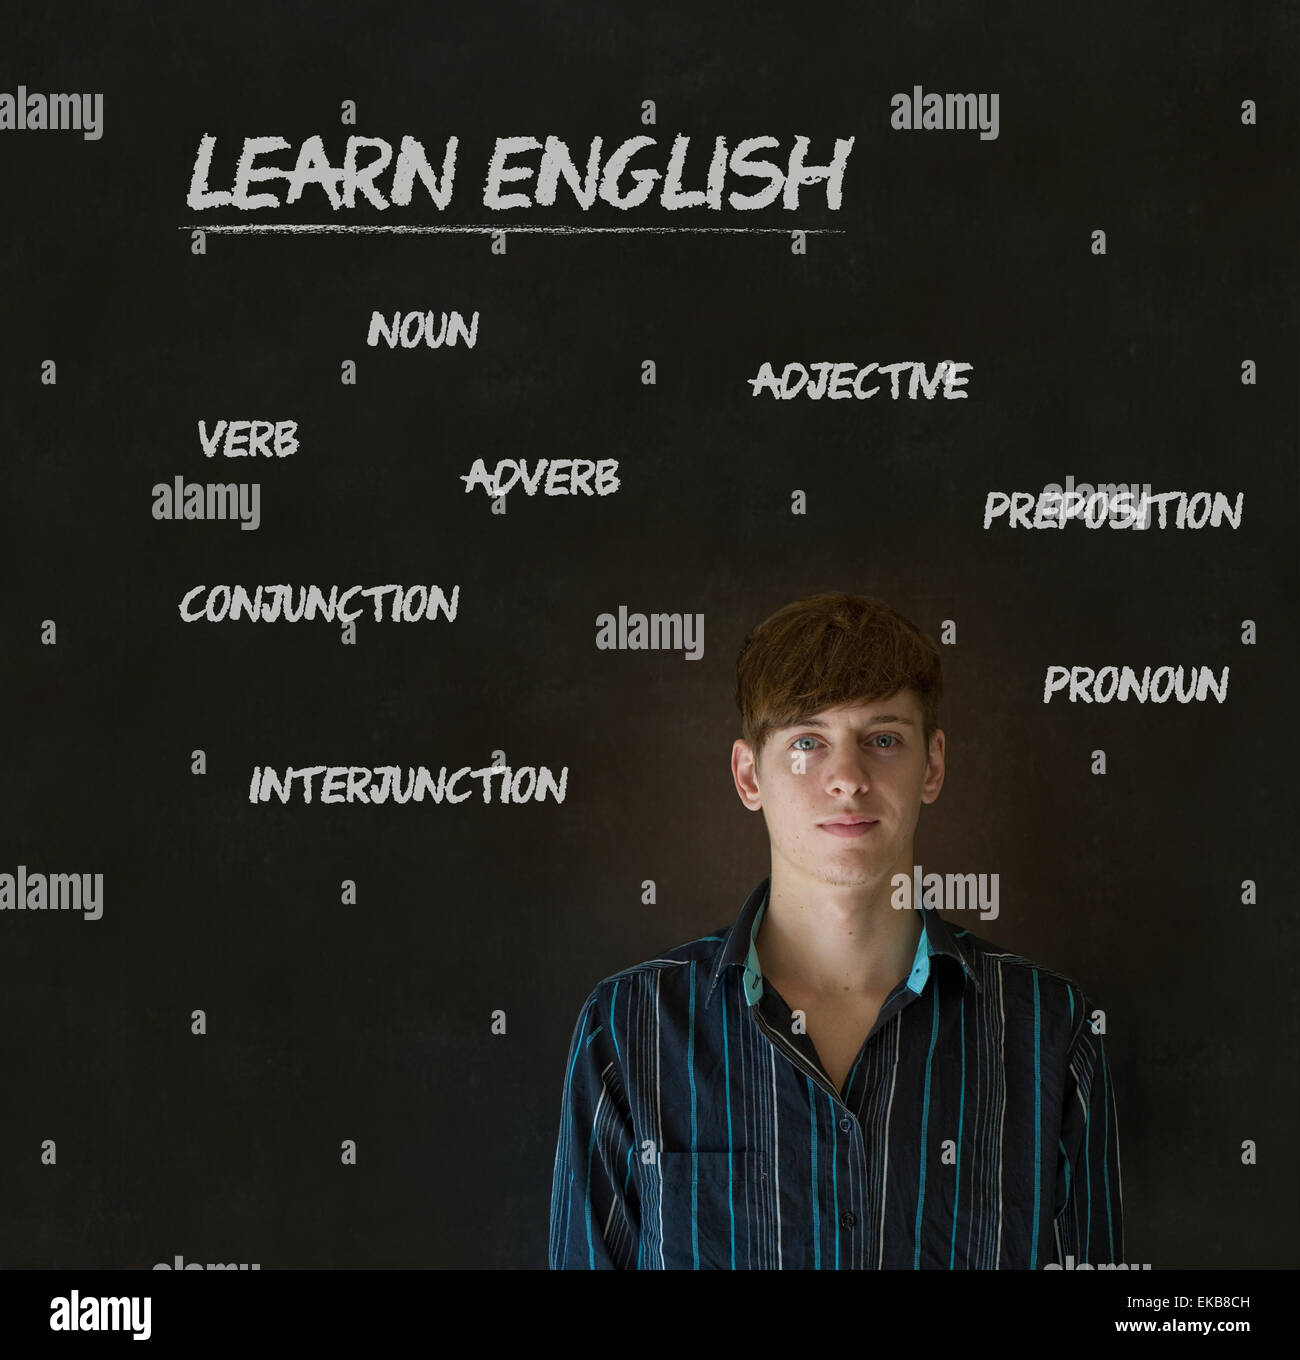 Apprendre l'anglais avec des enseignants contexte craie Banque D'Images